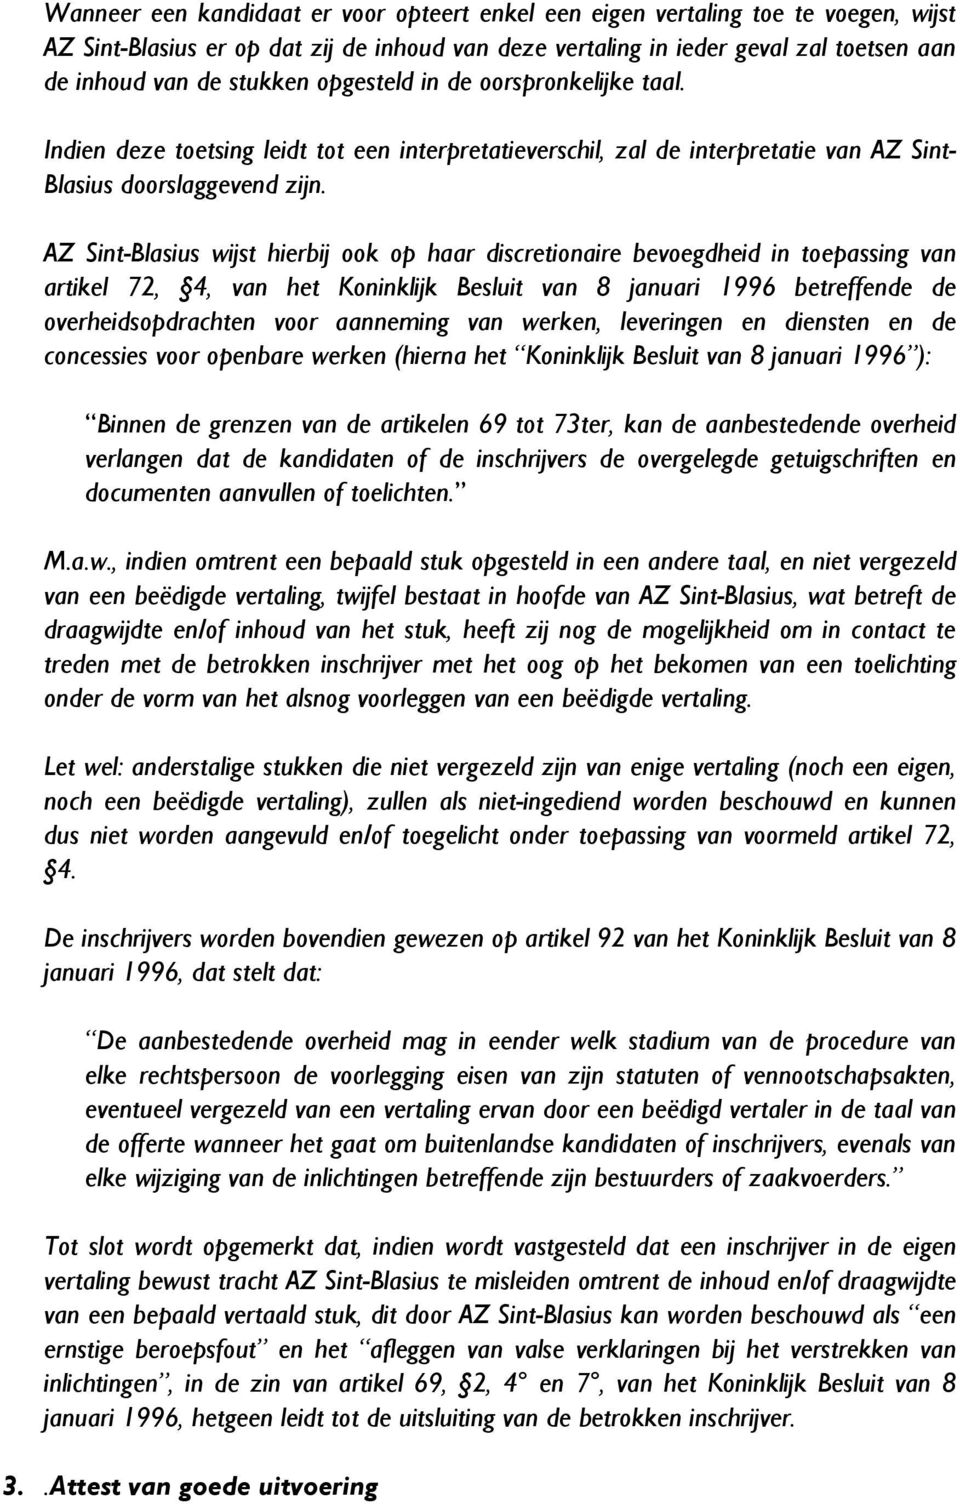 AZ Sint-Blasius wijst hierbij ook op haar discretionaire bevoegdheid in toepassing van artikel 72, 4, van het Koninklijk Besluit van 8 januari 1996 betreffende de overheidsopdrachten voor aanneming